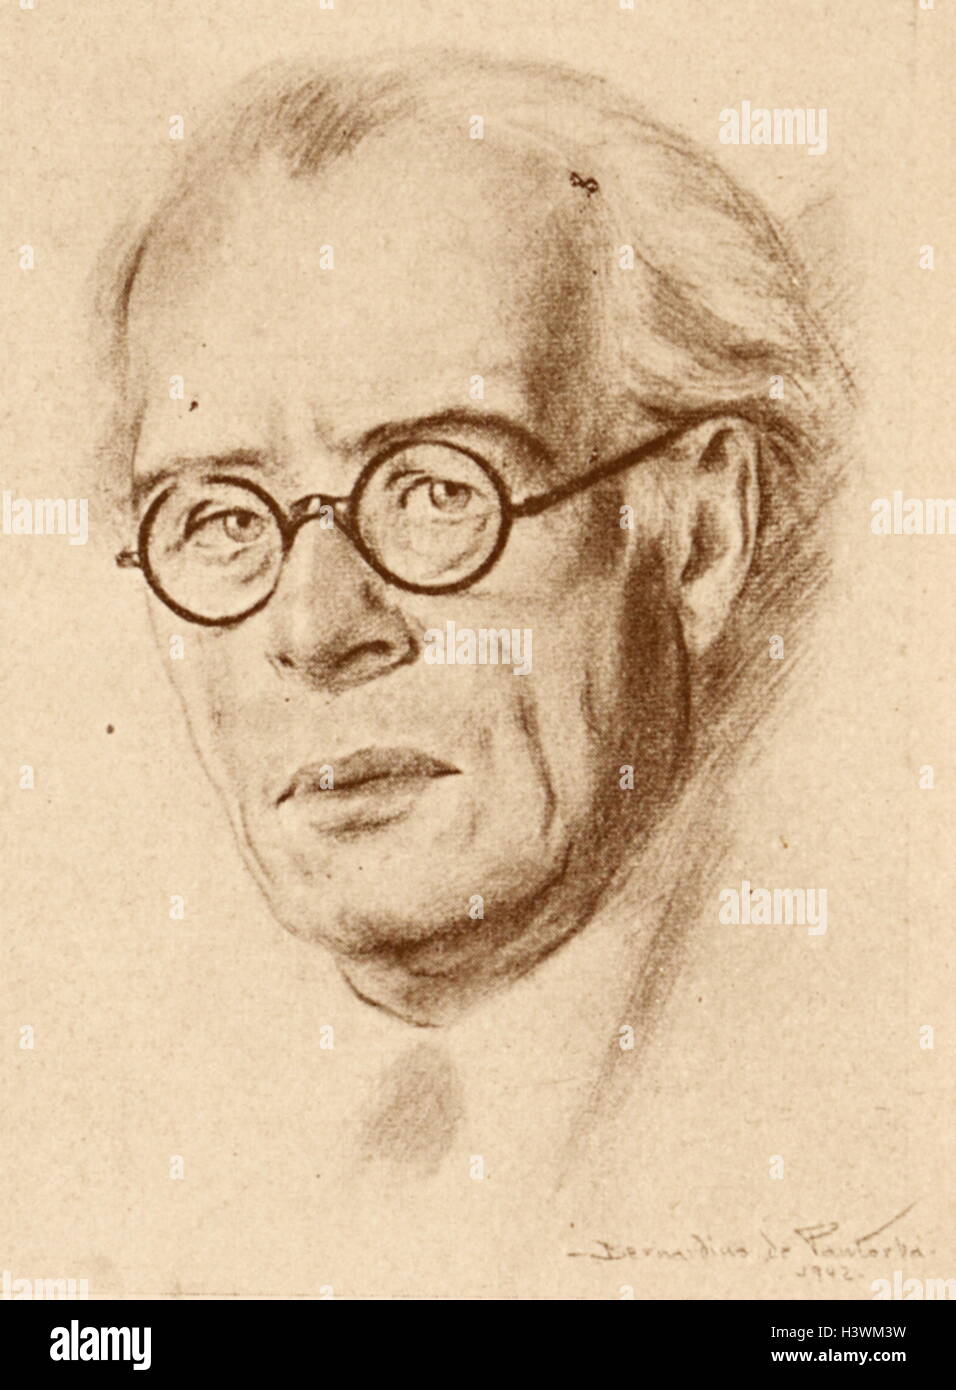 Ricard Lamote de Grignon ich Ribas (1899-1962), katalanischer und spanischer Komponist Orchester Dirigent. Zeichnung von Bernadino de Pantorba Stockfoto